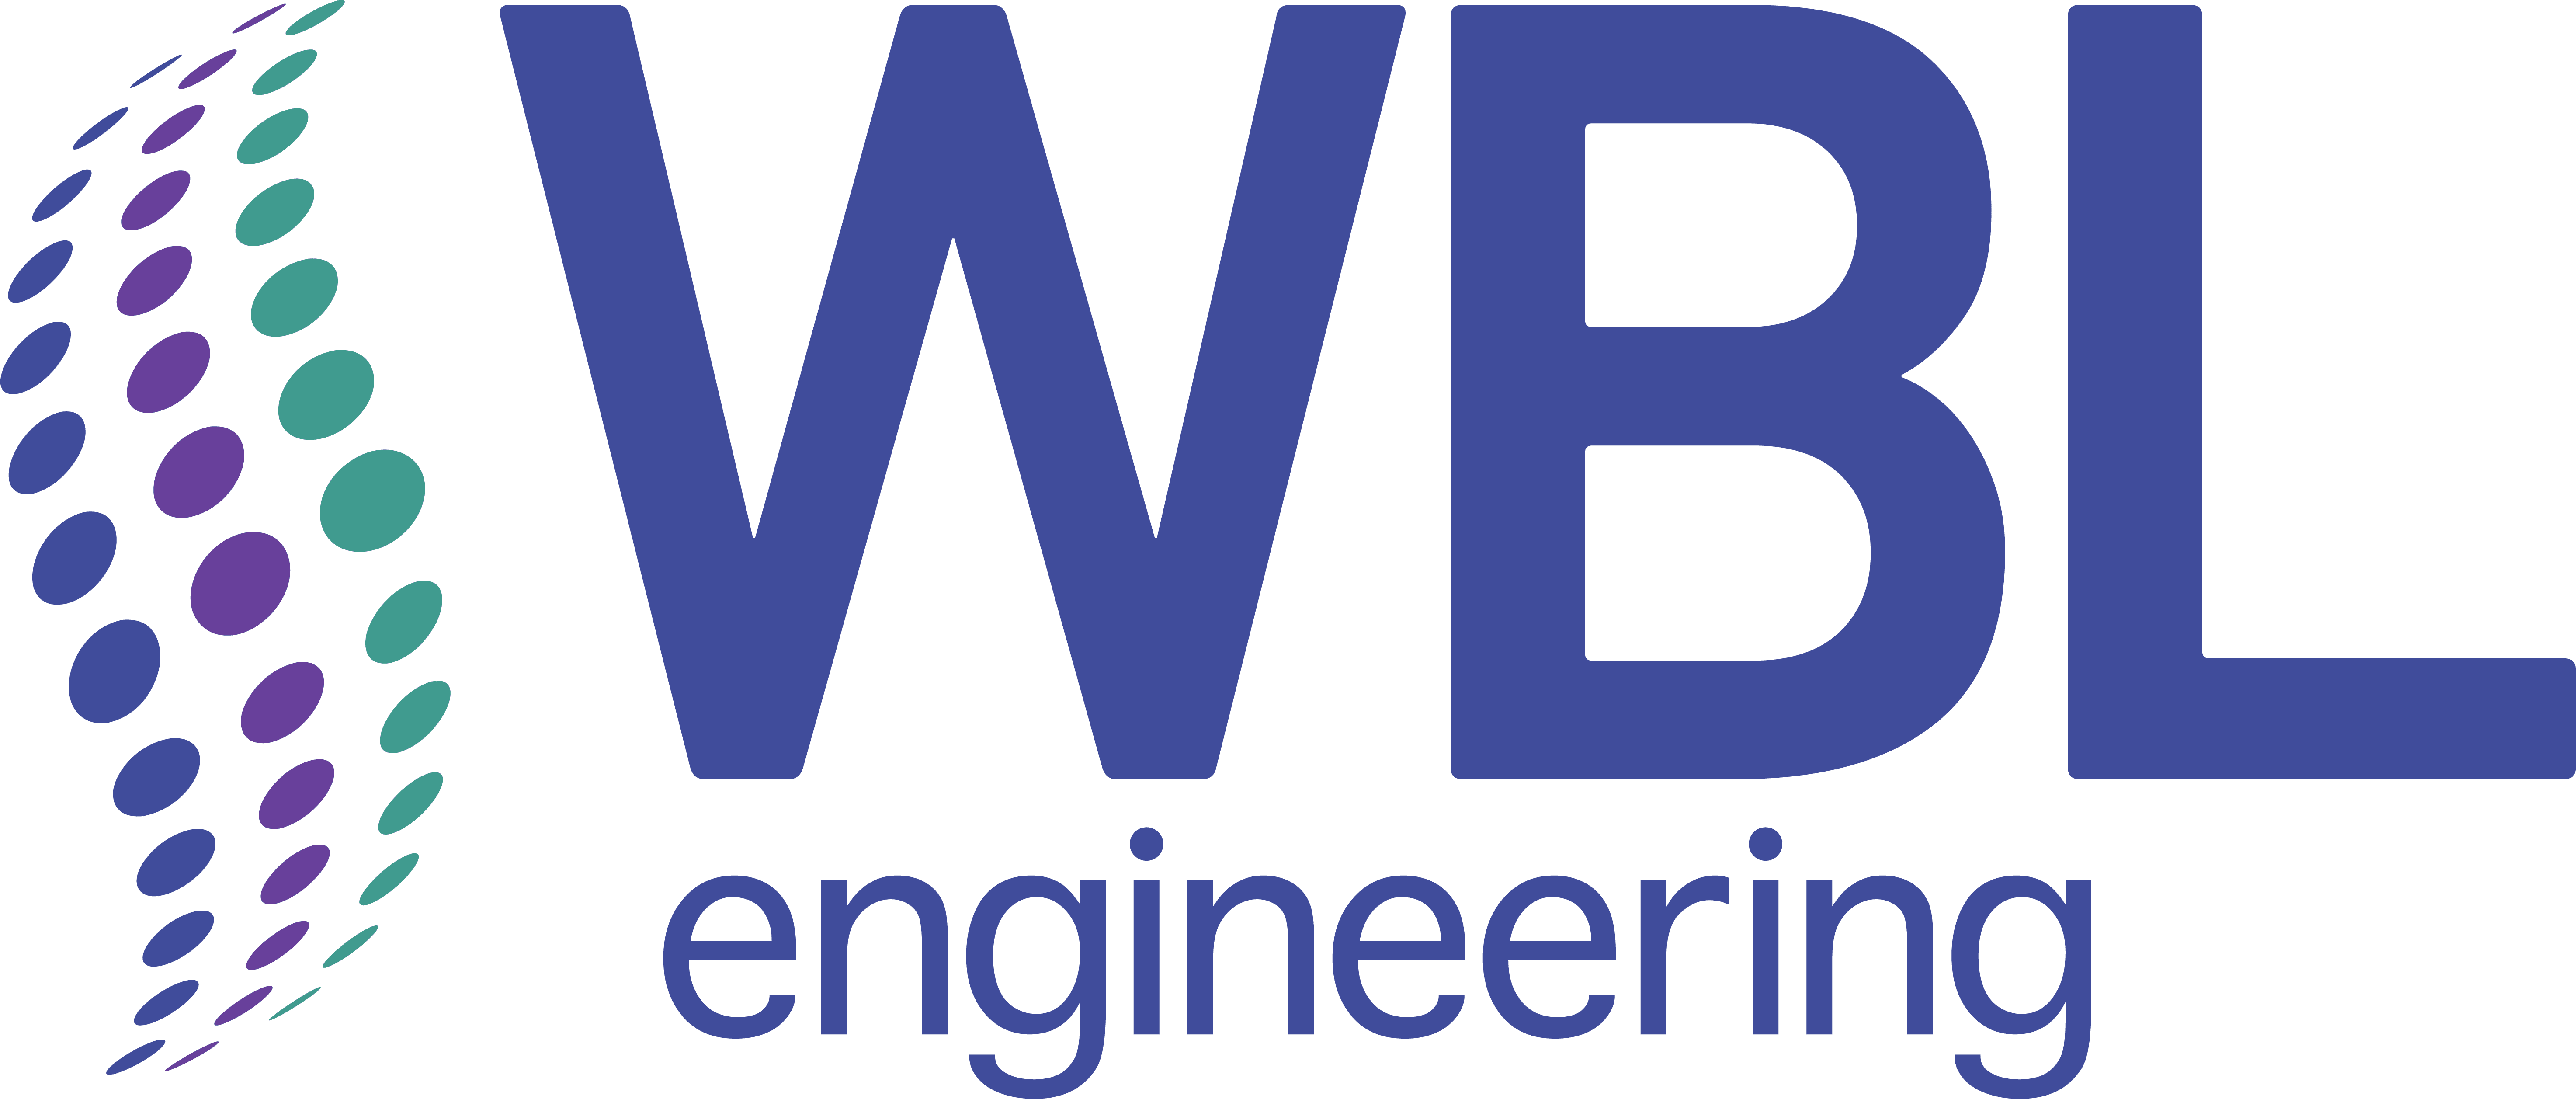 WBL Logo - WBL Engineering Ltd | BulkInside